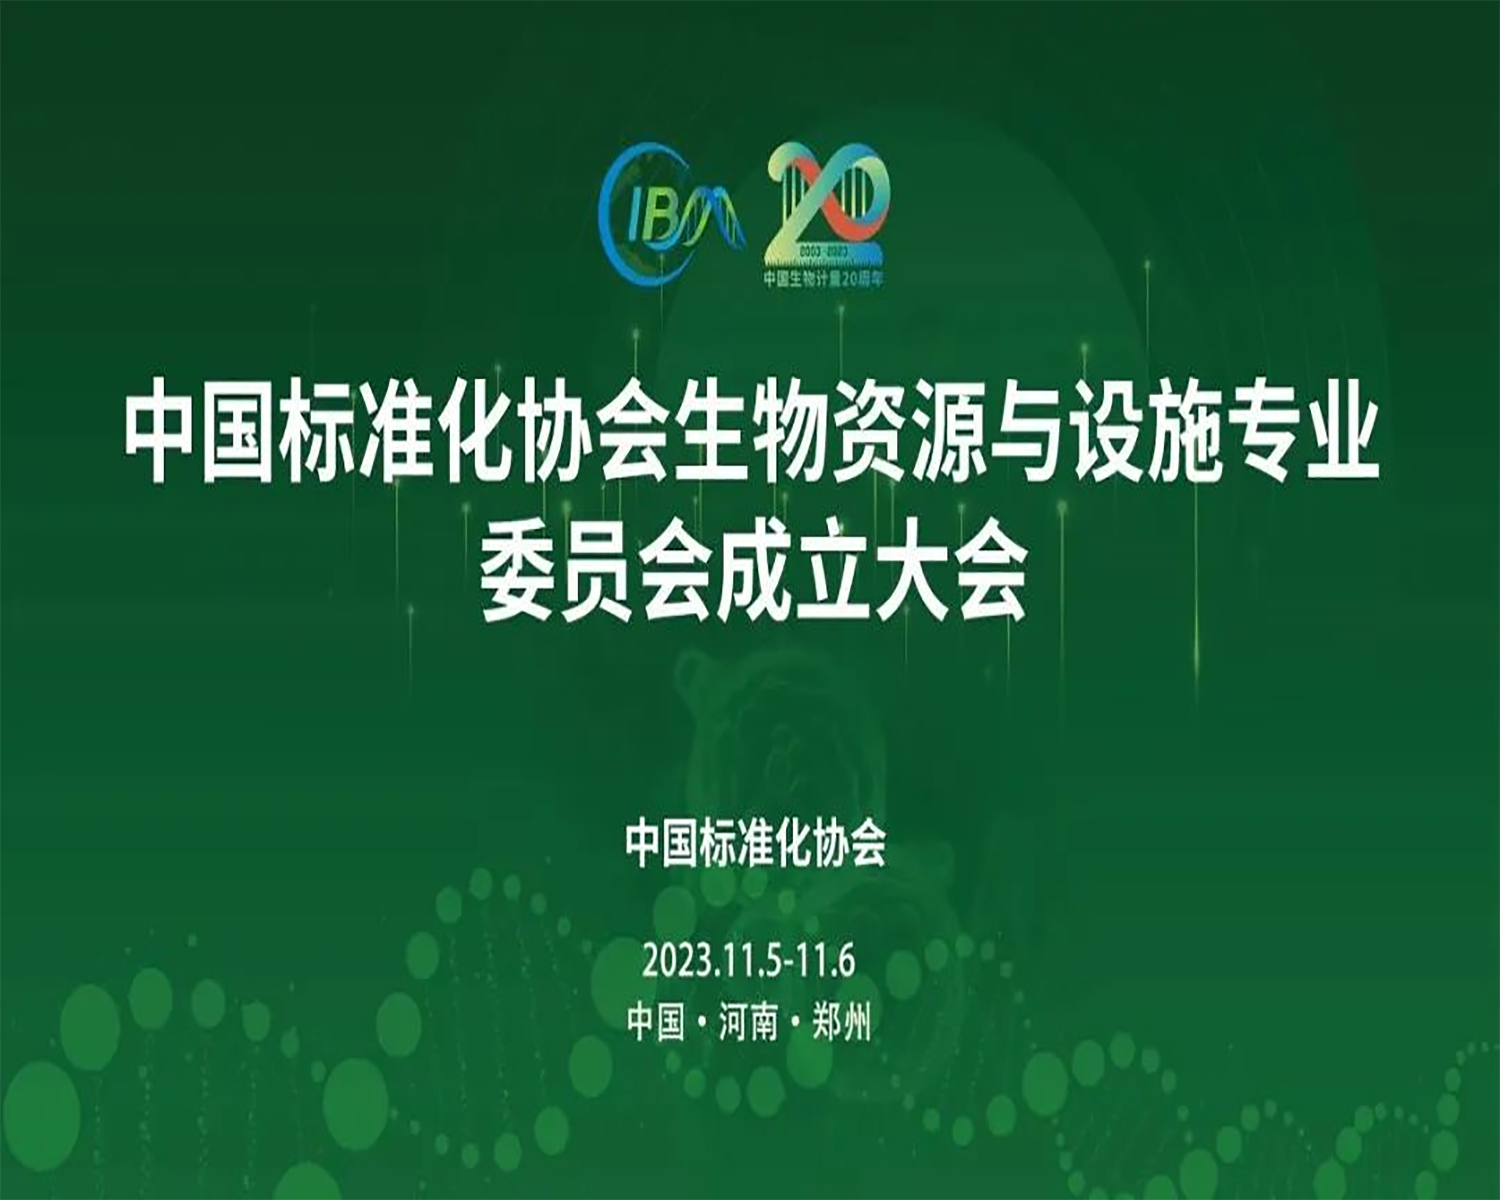 中国标准化协会生物资源与设施专业委员会成立大会，在郑州隆重召开！